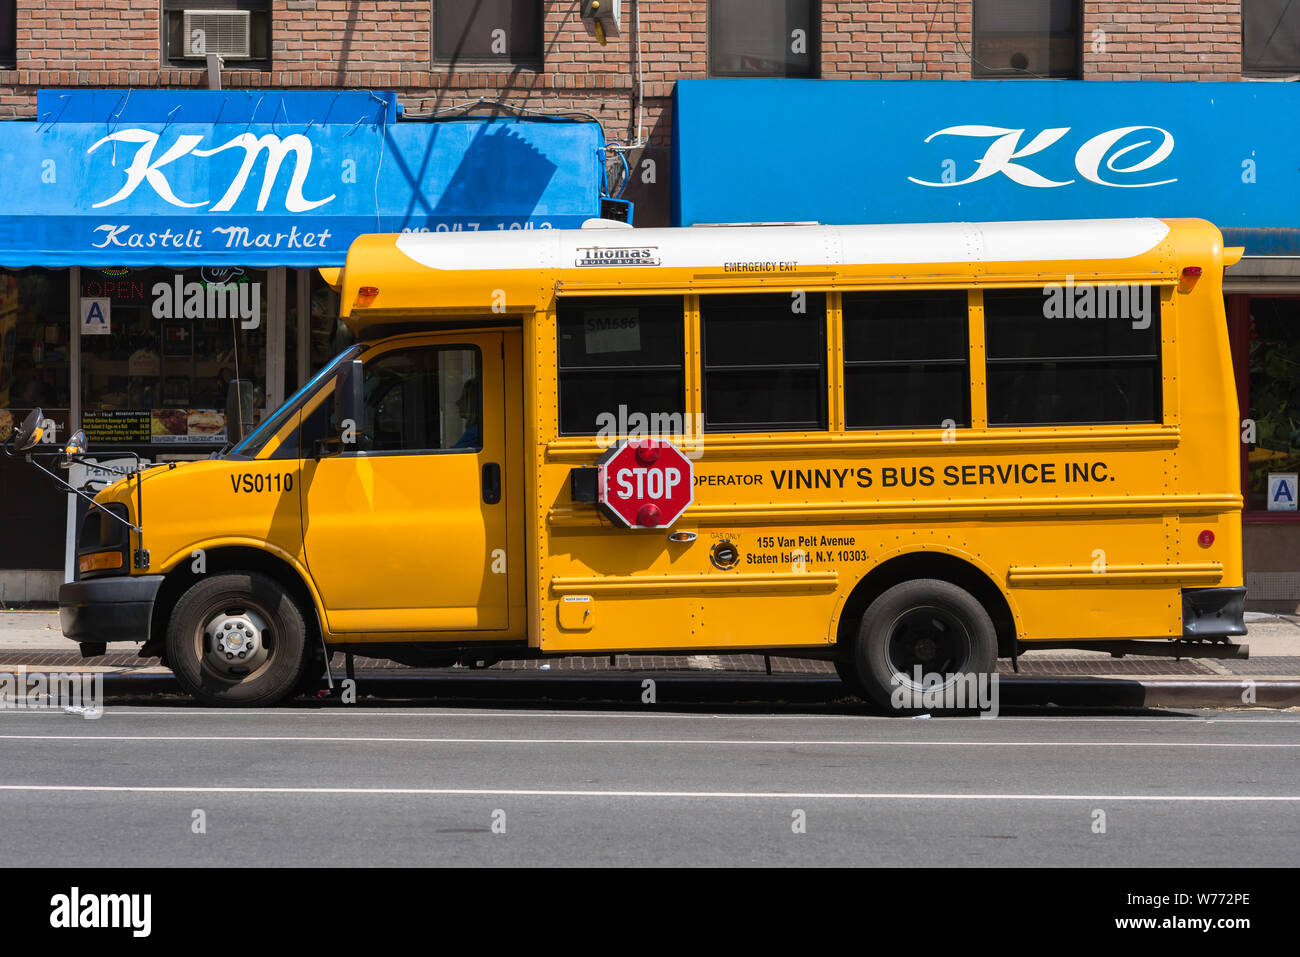 Autobus scolaire jaune, vue d'un autobus scolaire stationné dans la 8e Avenue, New York City, USA. Banque D'Images